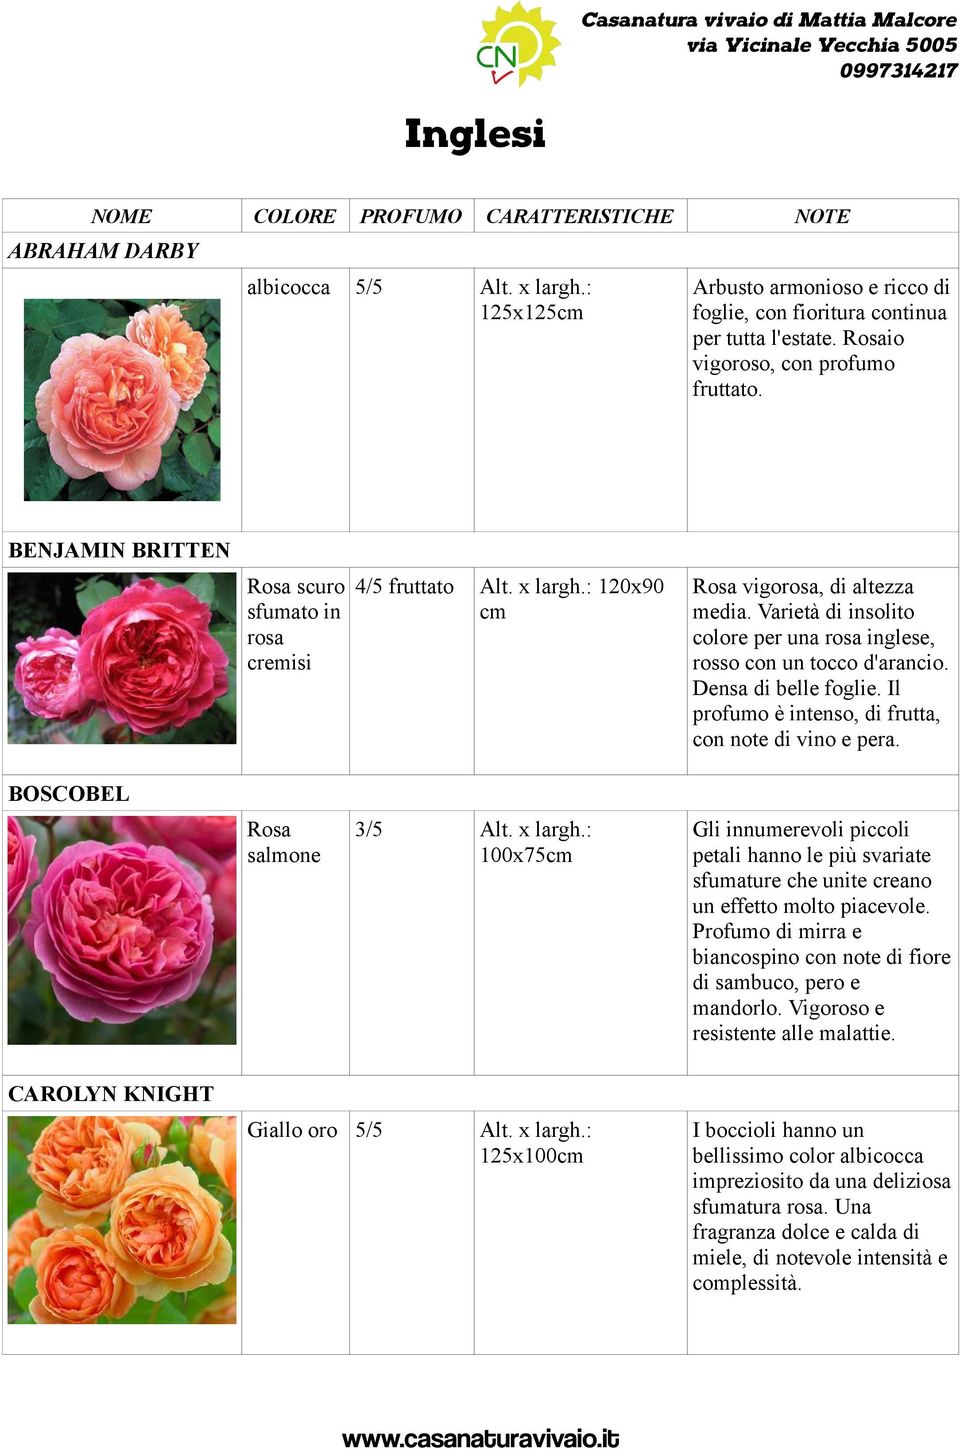 Varietà di insolito colore per una rosa inglese, rosso con un tocco d'arancio. Densa di belle foglie. Il profumo è intenso, di frutta, con note di vino e pera.